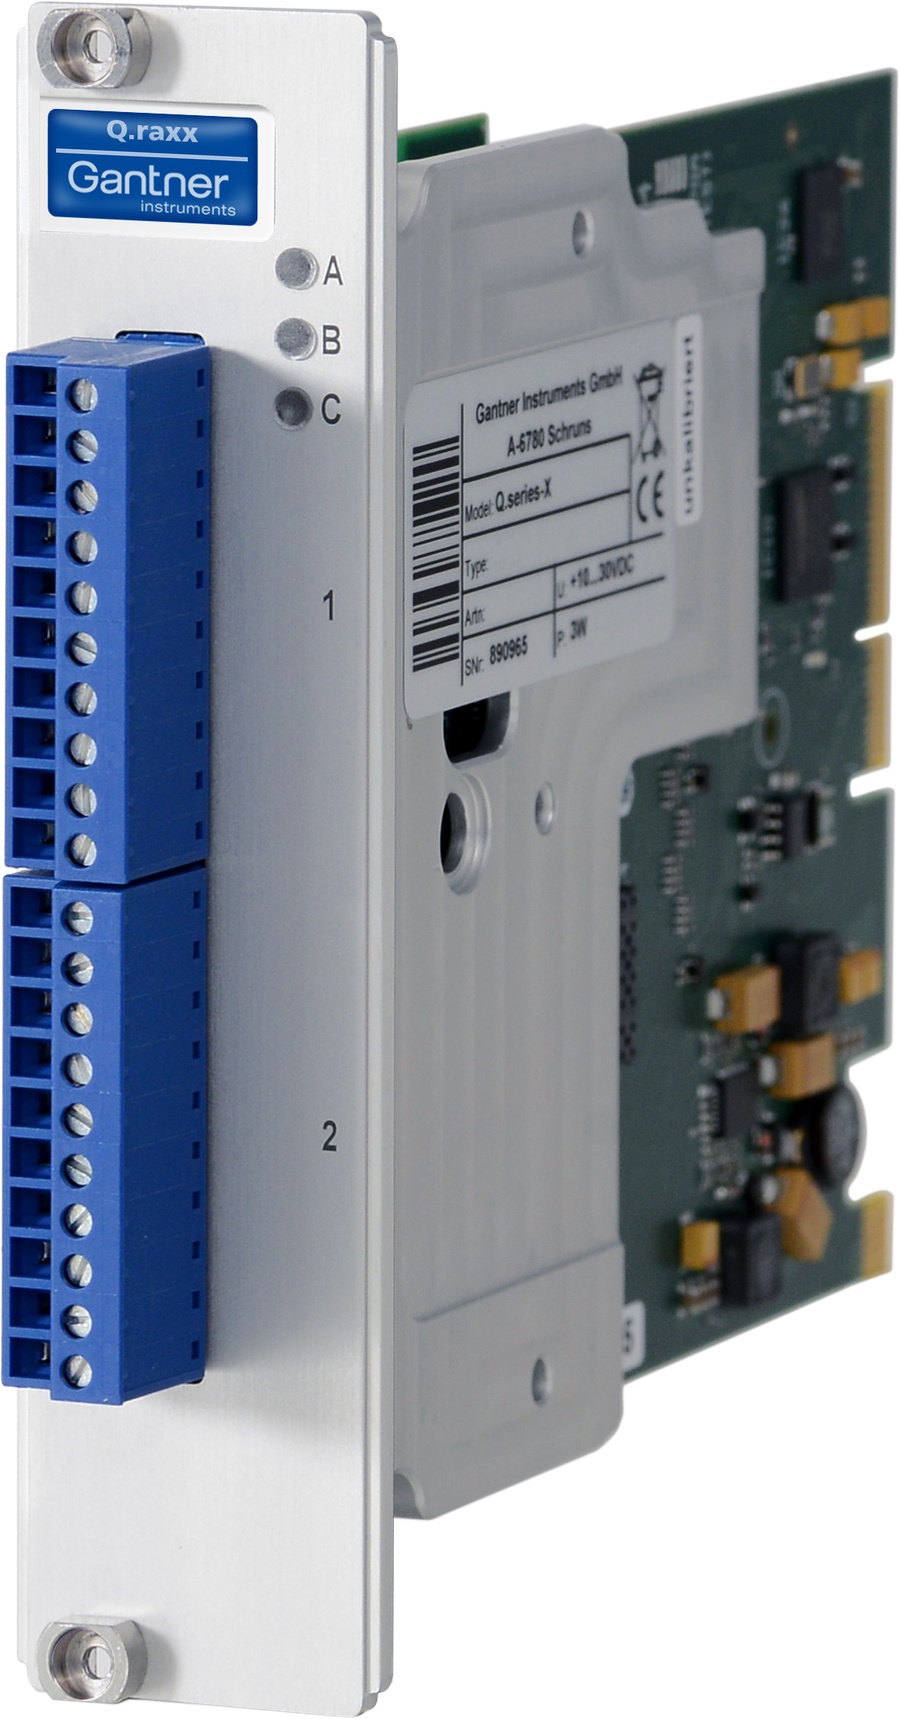 Q.raxx XL-A108 Datenerfassungsmodul (3HE) mit 8 Spannungs-Eingängen für dynamische Signale